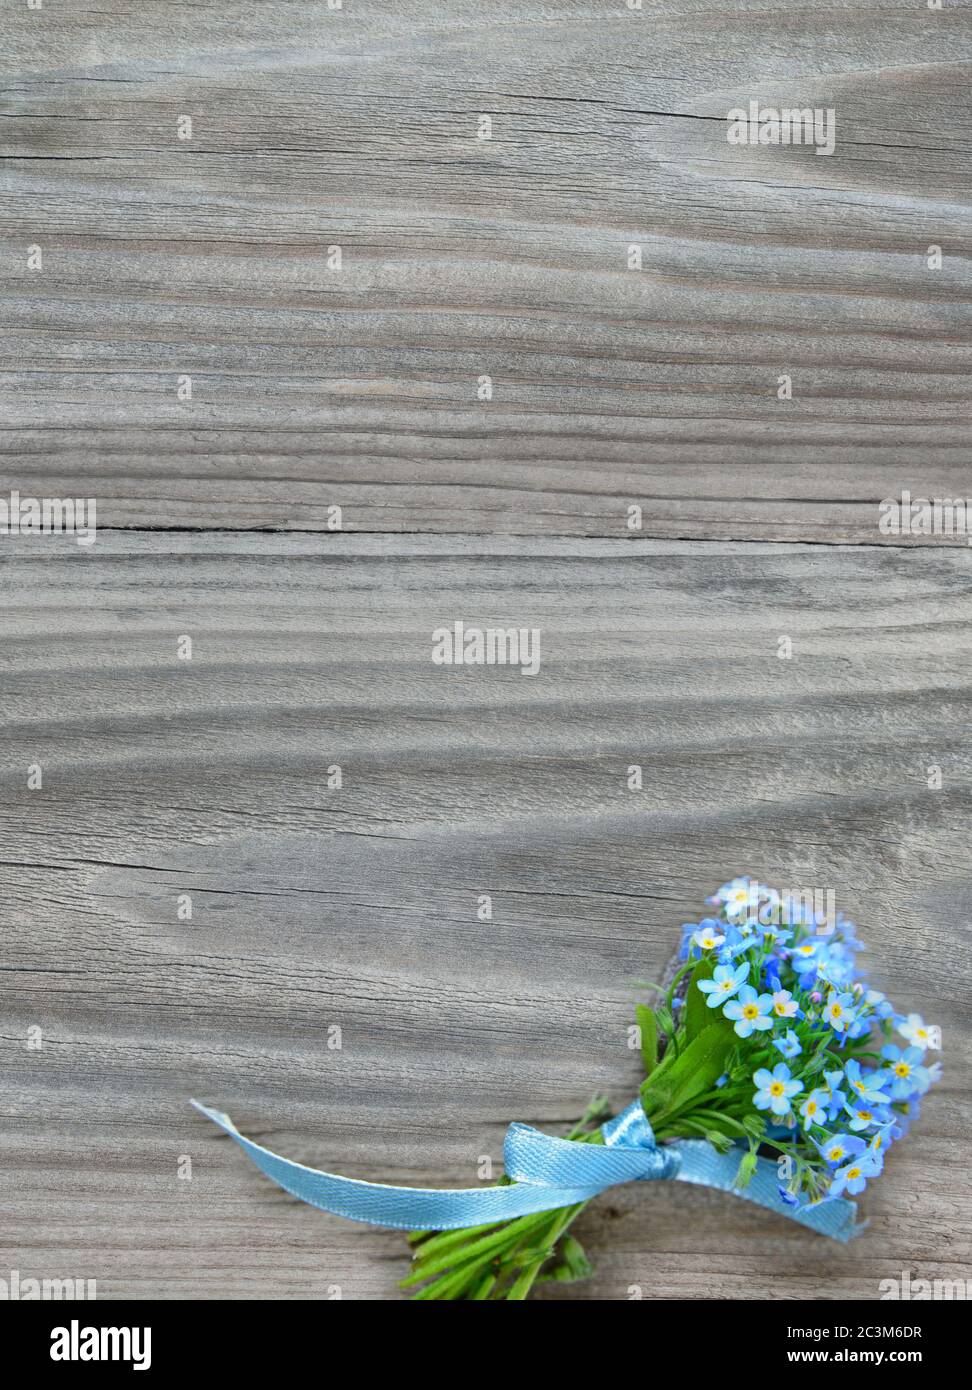 Petit bouquet de fleurs bleues Forget-me-Not, attaché un ruban bleu, sur fond gris de la vieille planche en bois, avec espace de copie Banque D'Images